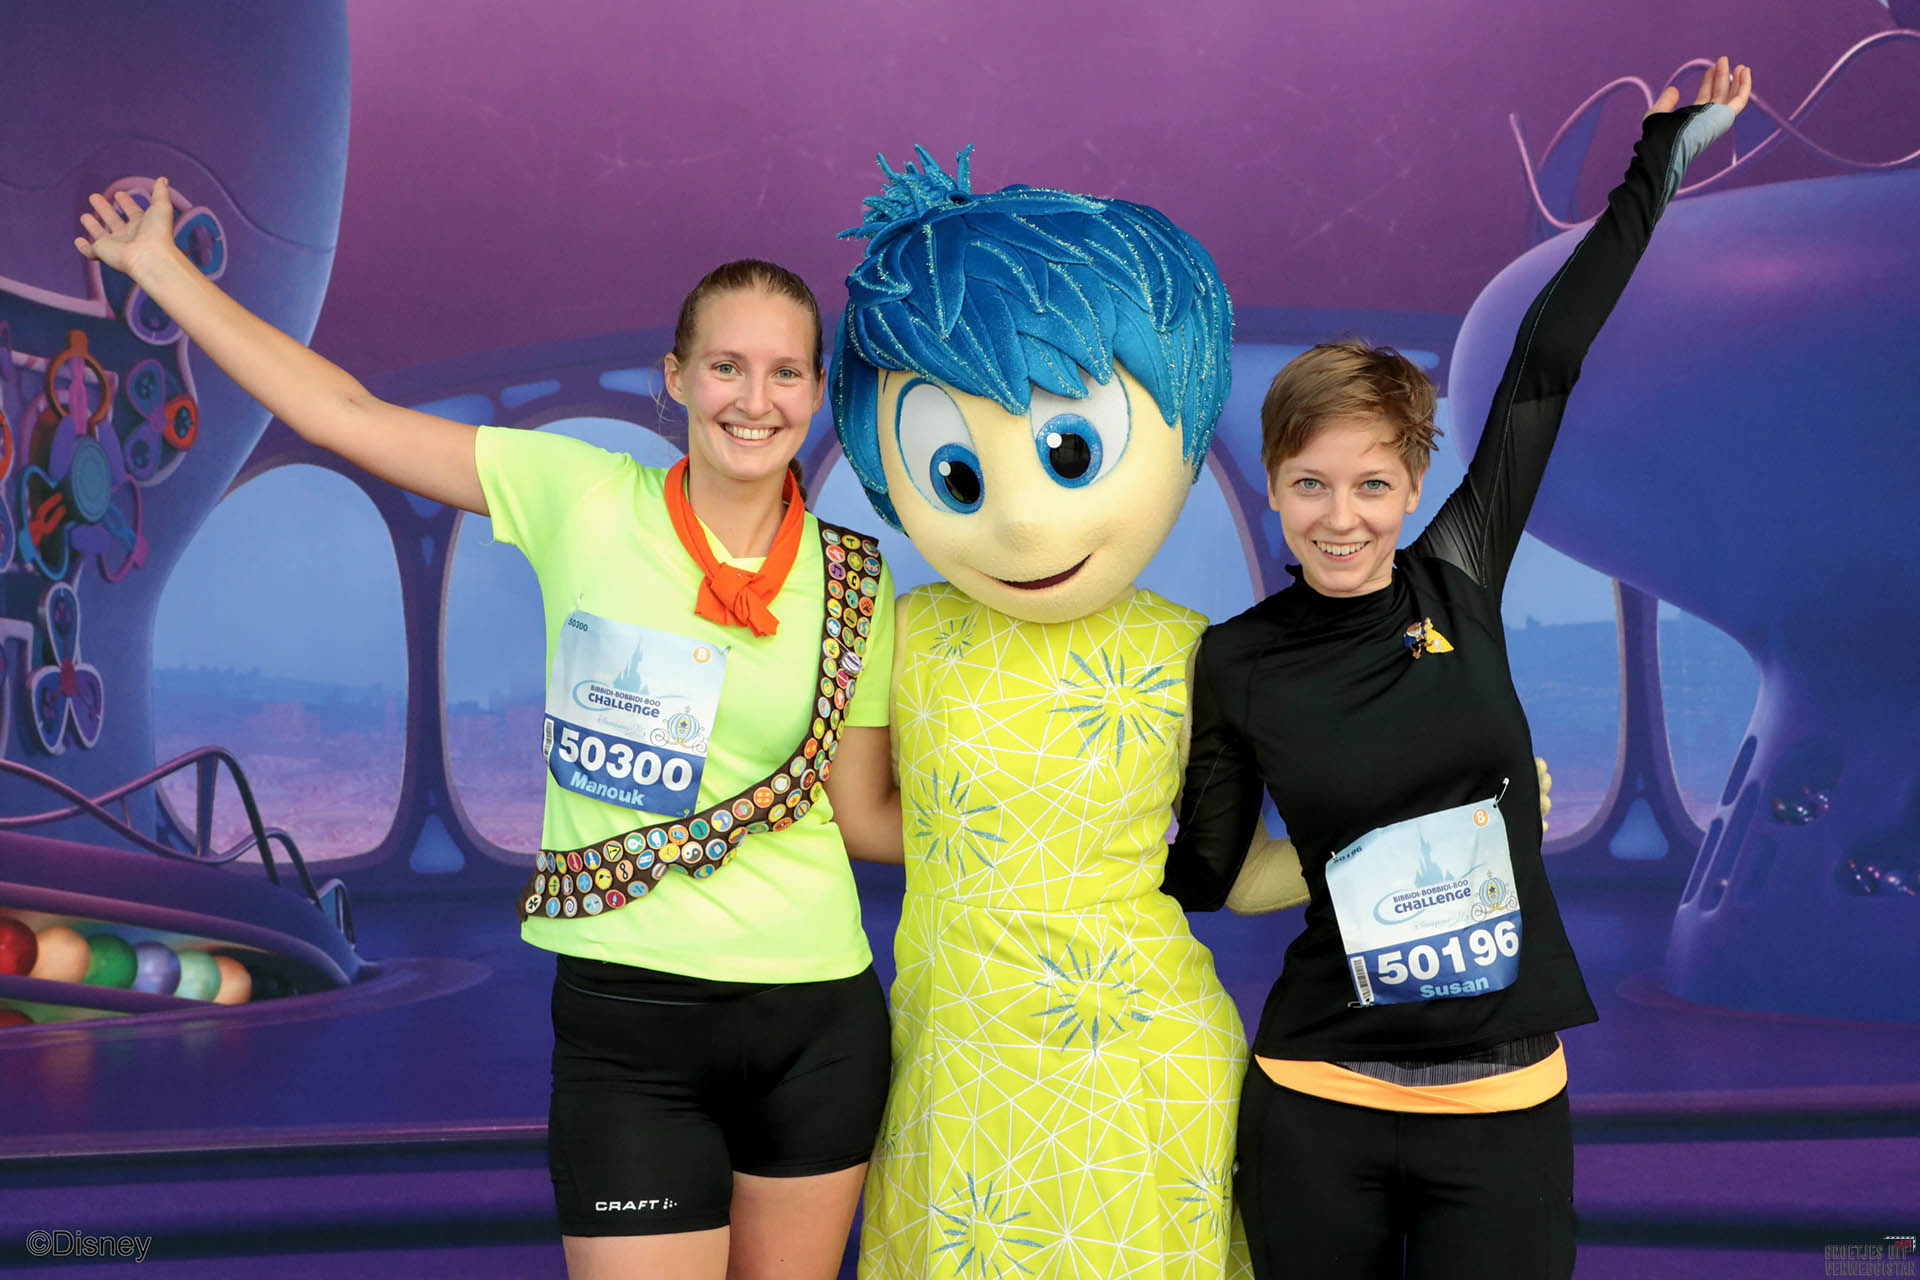 Op de foto met Disneycharacter Joy uit Inside Out tijdens de halve marathon in Disneyland Parijs